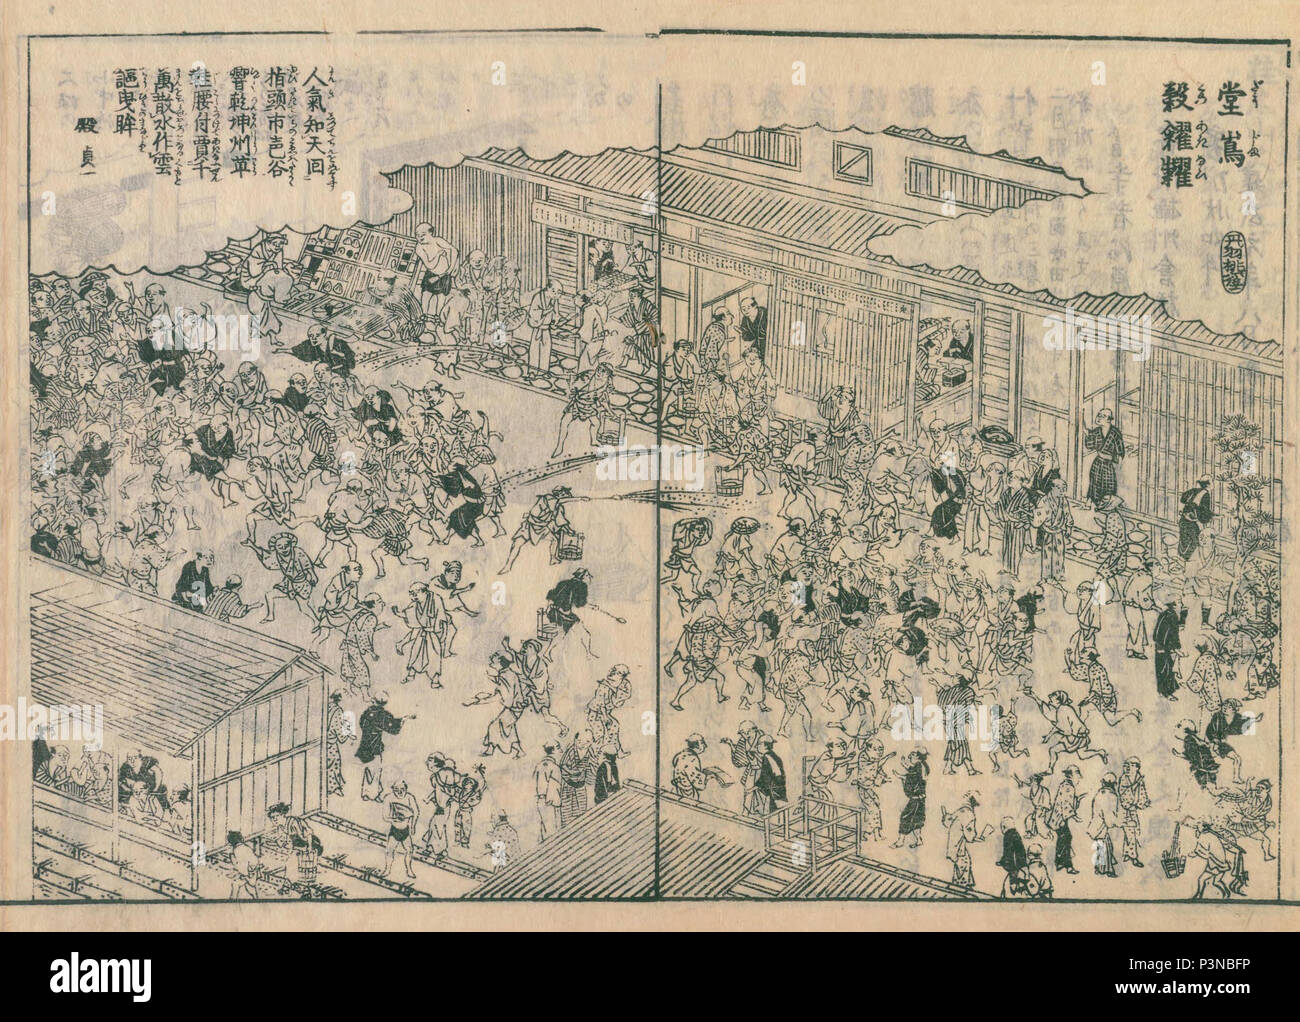 Dojima Rice Market, de Settsu meisho zue, publié en 1798 Banque D'Images